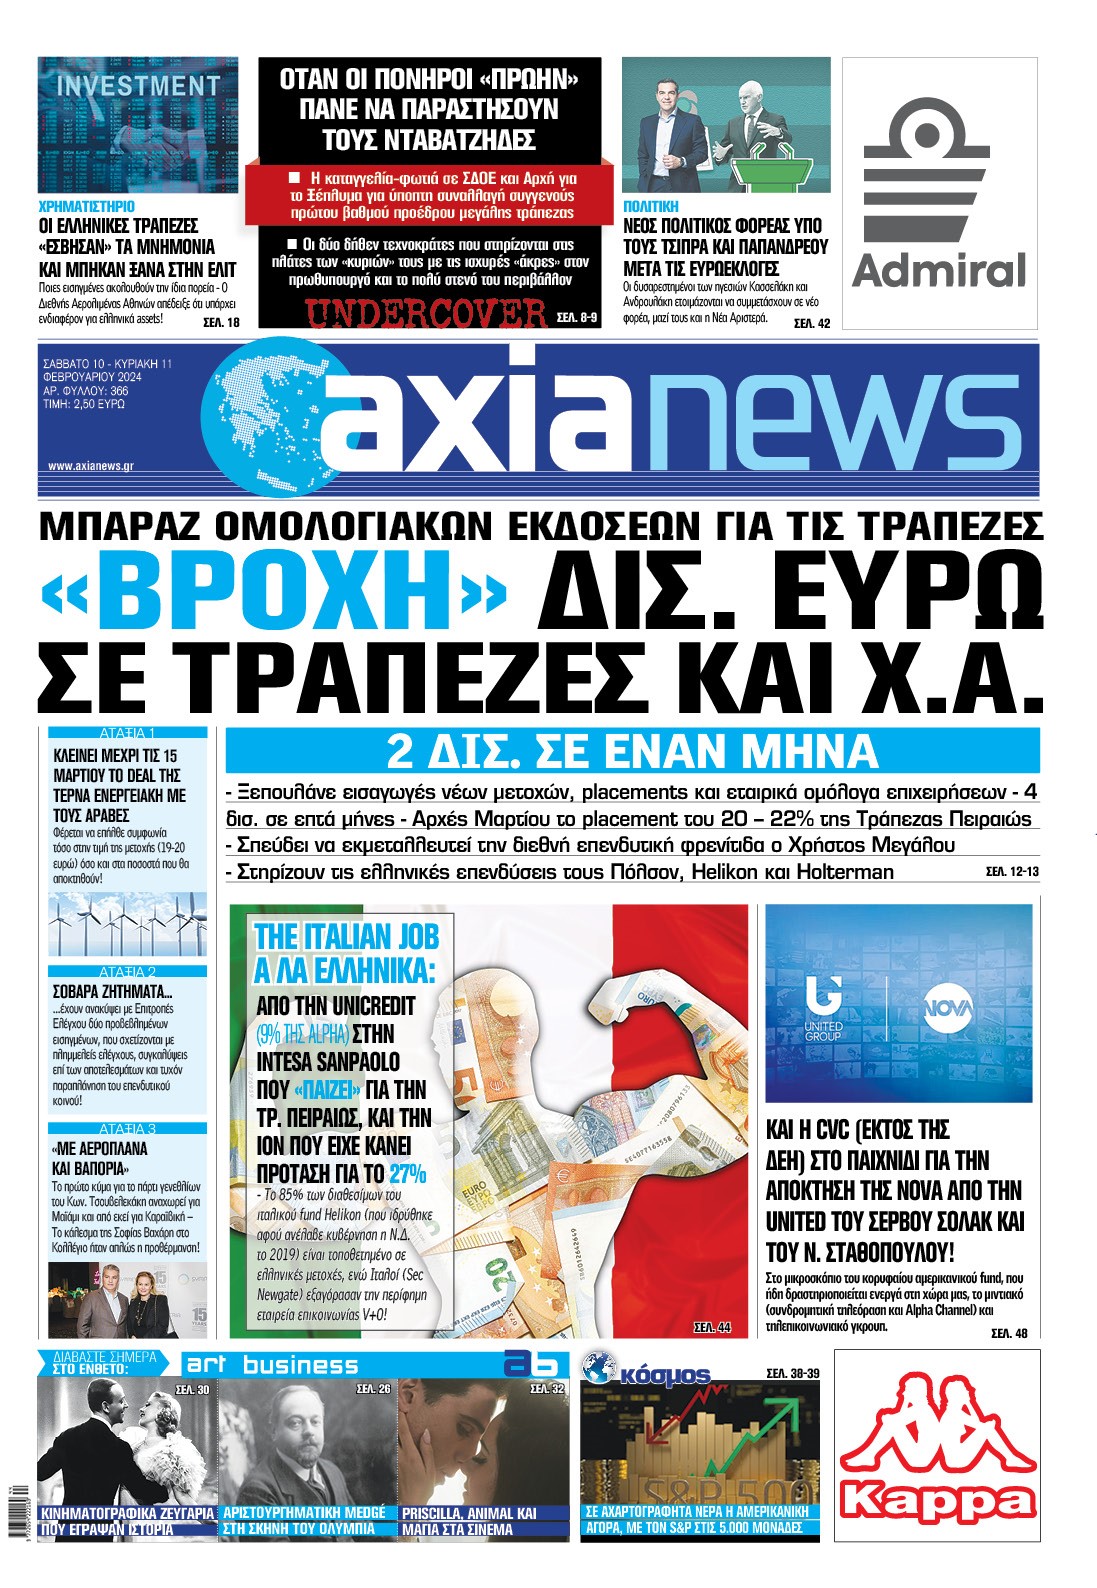 Με τίτλο: “«Βροχή» δισ. ευρώ σε τράπεζες και Χ.Α.” κυκλοφορεί αύριο, Σάββατο 10 Φεβρουαρίου, η «Axianews».  Μπαράζ ομολογιακών εκδόσεων για τις τράπεζες   2 δισ. σε έναν μήνα   Ακόμη:  Χρηματιστήριο  Οι ελληνικές τράπεζες «έσβησαν» τα μνημόνια και μπήκαν ξανά στην ελίτ   Πολιτική   Νέος πολιτικός φορέας υπό τους Τσίπρα και Παπανδρέου μετά τις Ευρωεκλογές